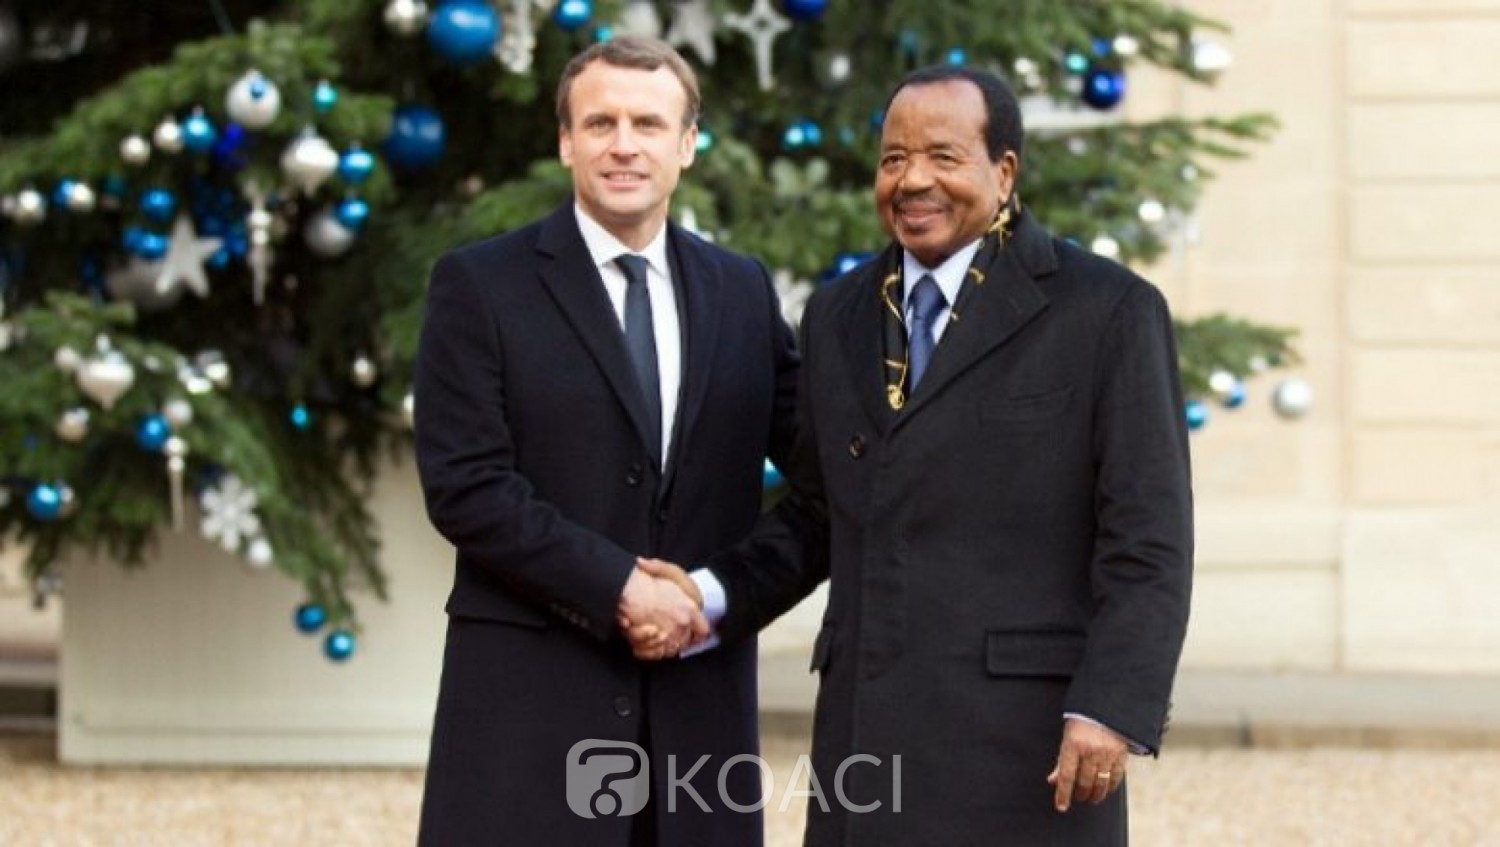 Cameroun: Montée du sentiment anti-français  après les révélations d'ingérences de Macron